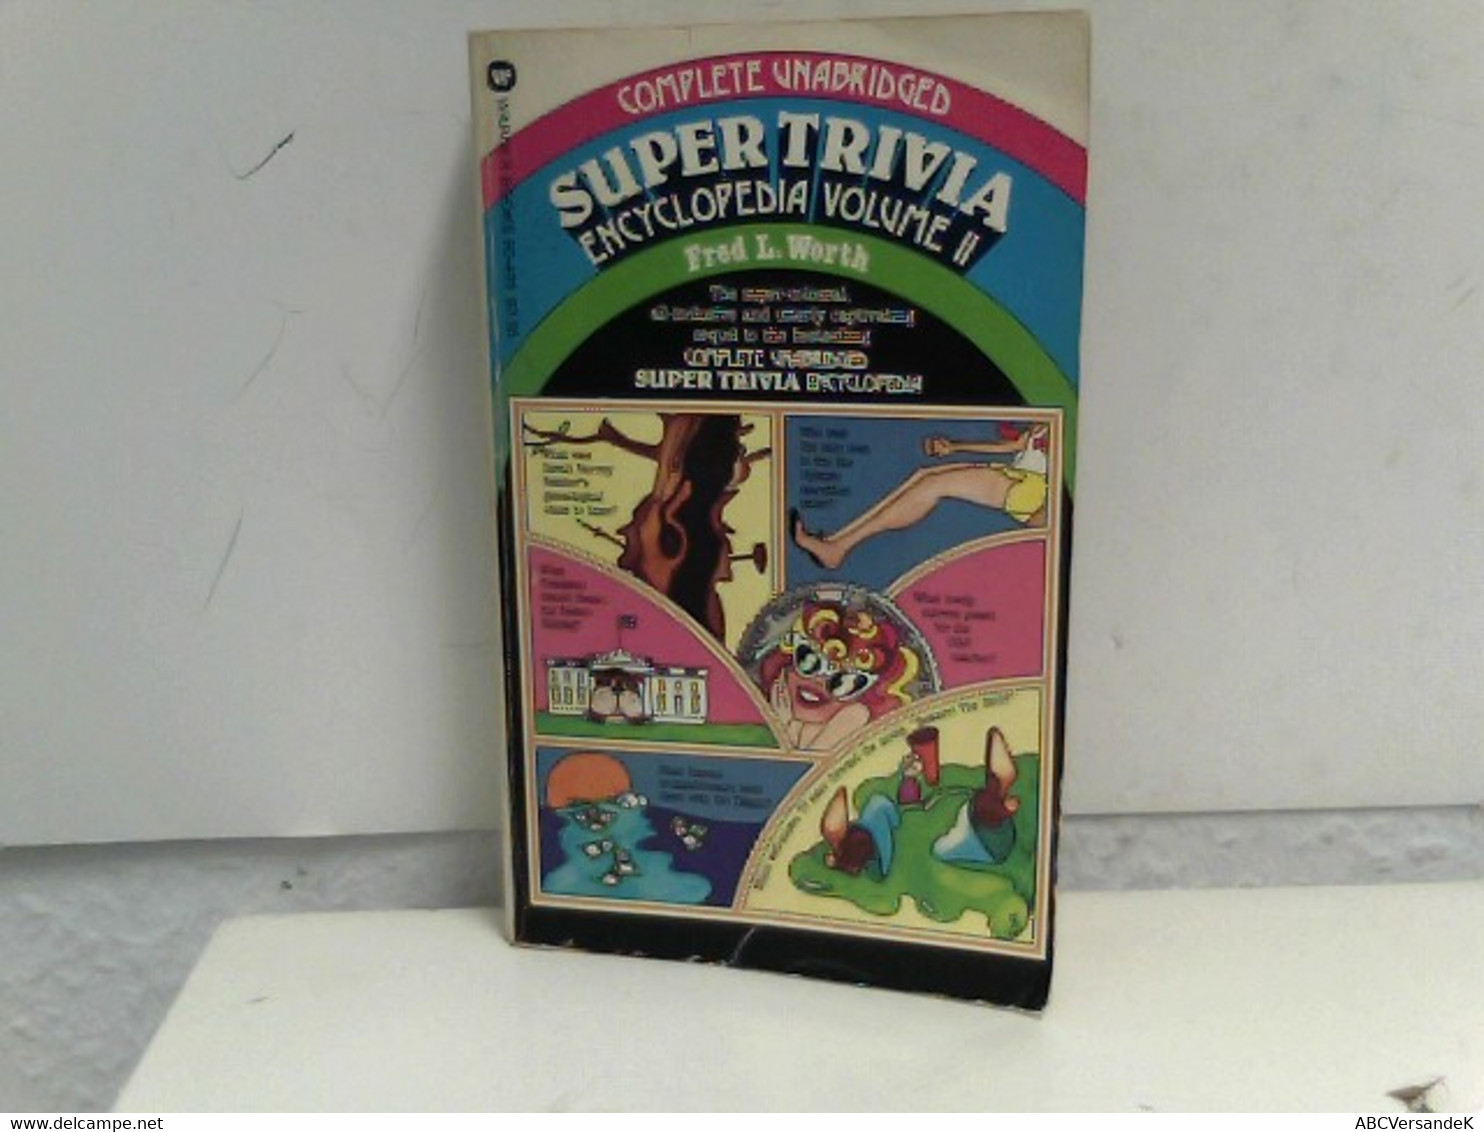 The Complete Unabridged Super Trivia Encyclopedia Volume II. - Léxicos